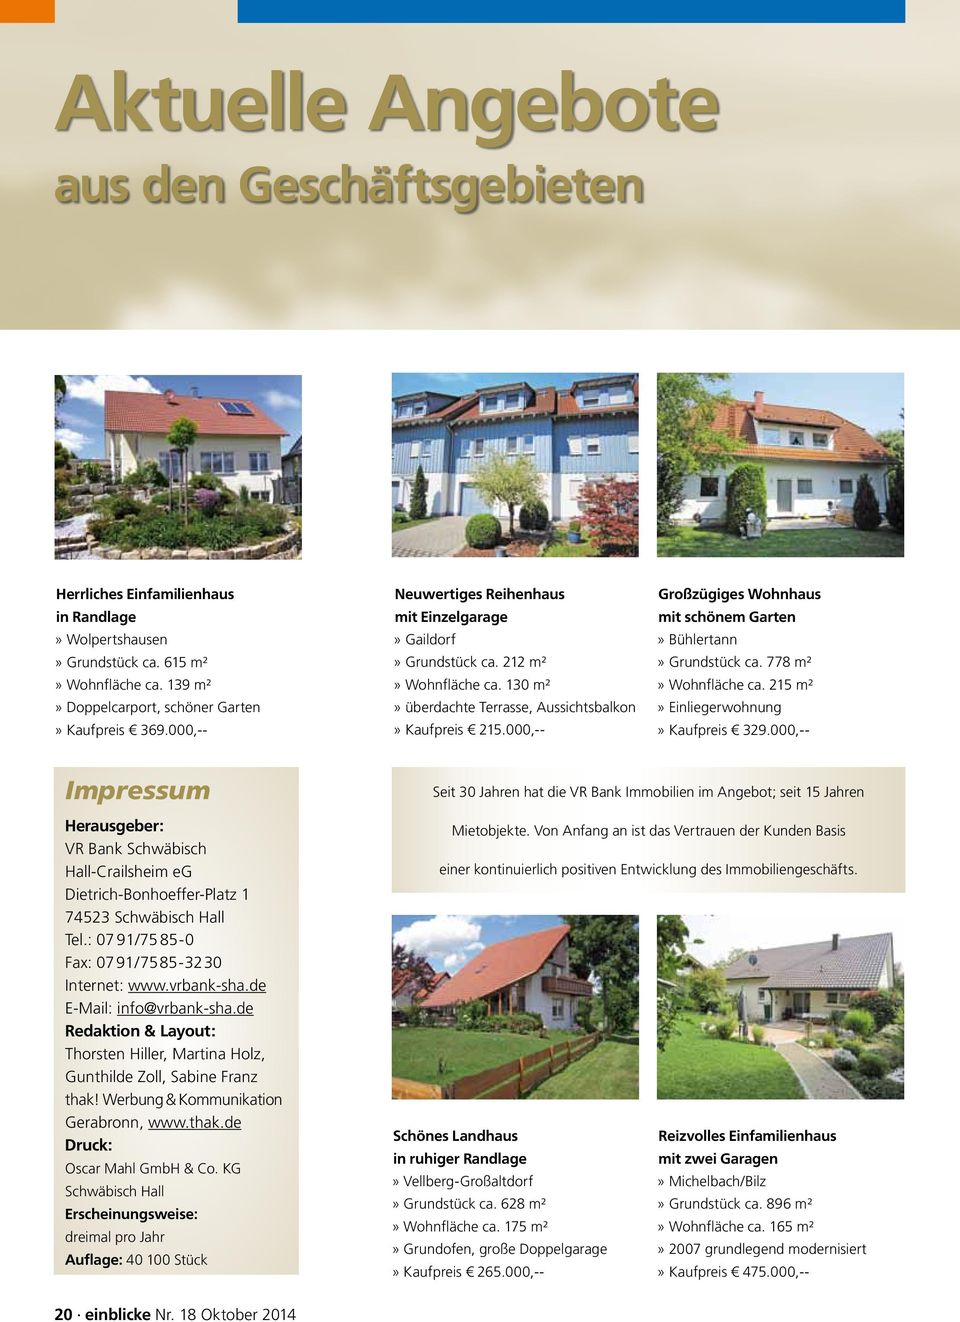 000,-- Großzügiges Wohnhaus mit schönem Garten» Bühlertann» Grundstück ca. 778 m²» Wohnfläche ca. 215 m²» Einliegerwohnung» Kaufpreis 329.